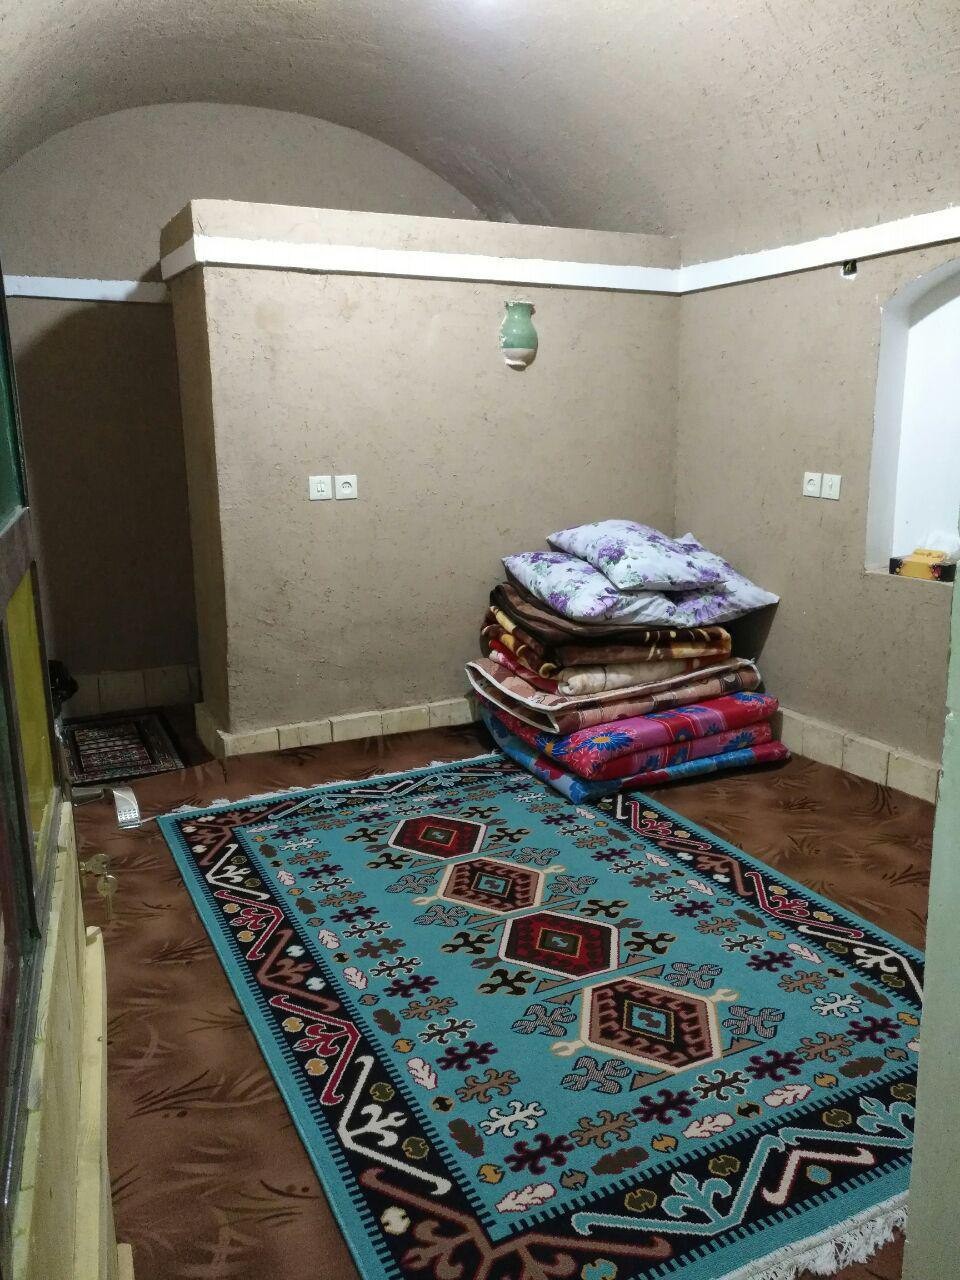 کویری اجاره اقامتگاه بومگردی درکویر کردآباد طبس - اتاق10 